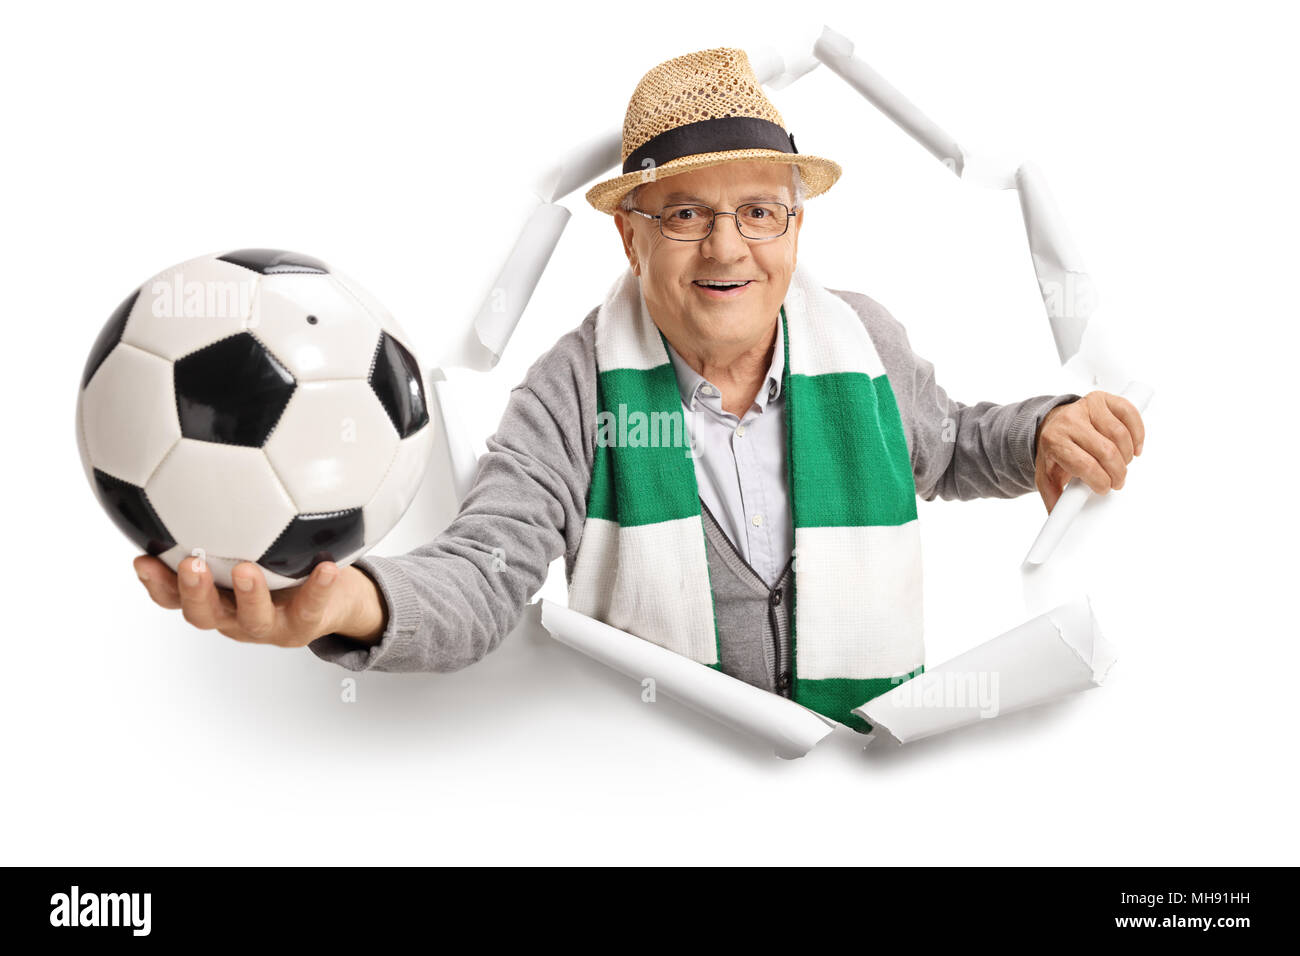 Personnes âgées fan de foot avec un foulard et une rupture de football à travers le papier Banque D'Images